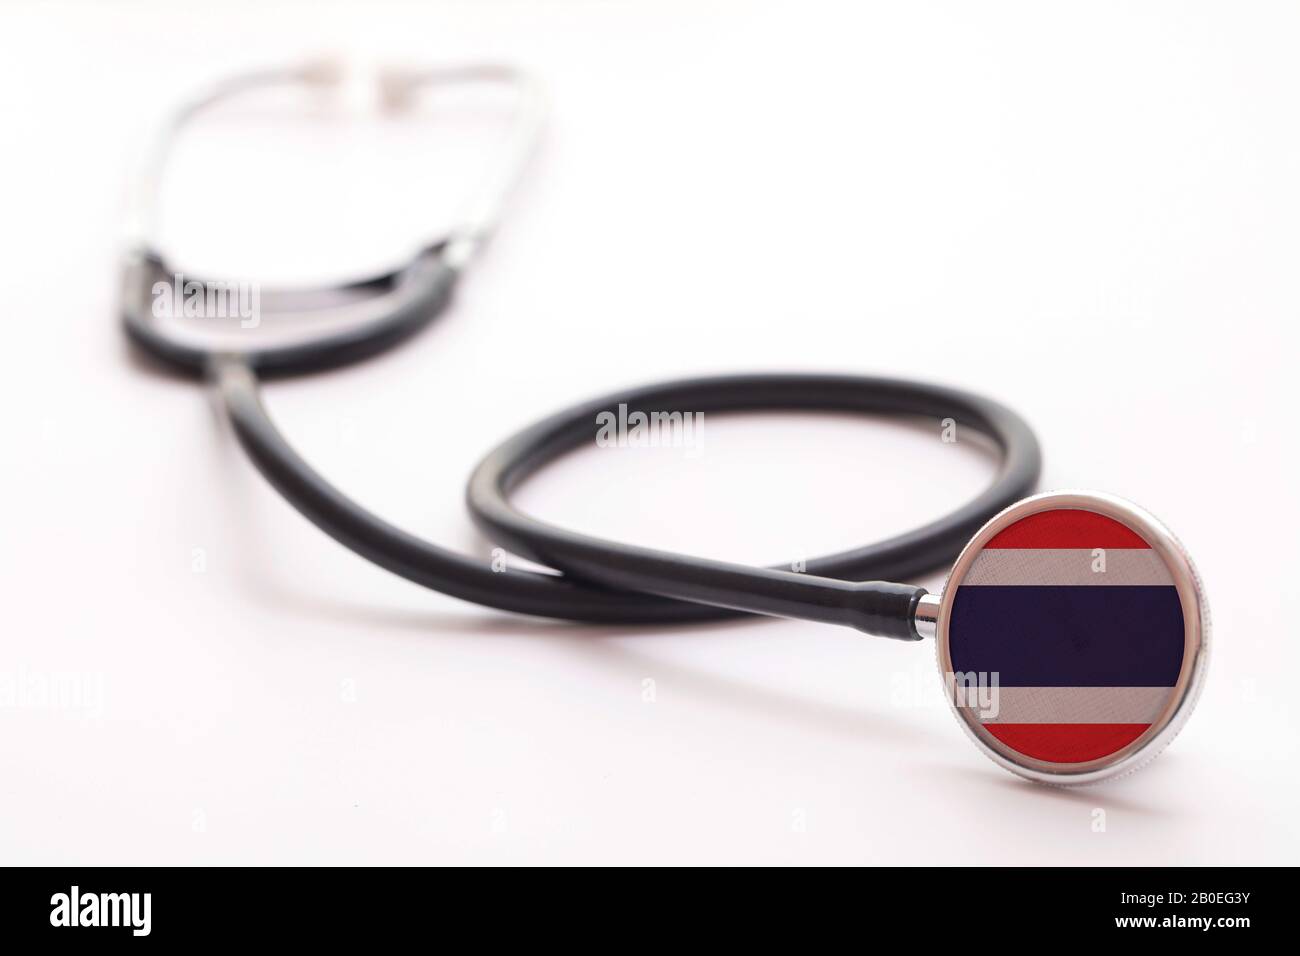 Thailandia concetto di assistenza sanitaria. Stetoscopio medico con bandiera del paese Foto Stock